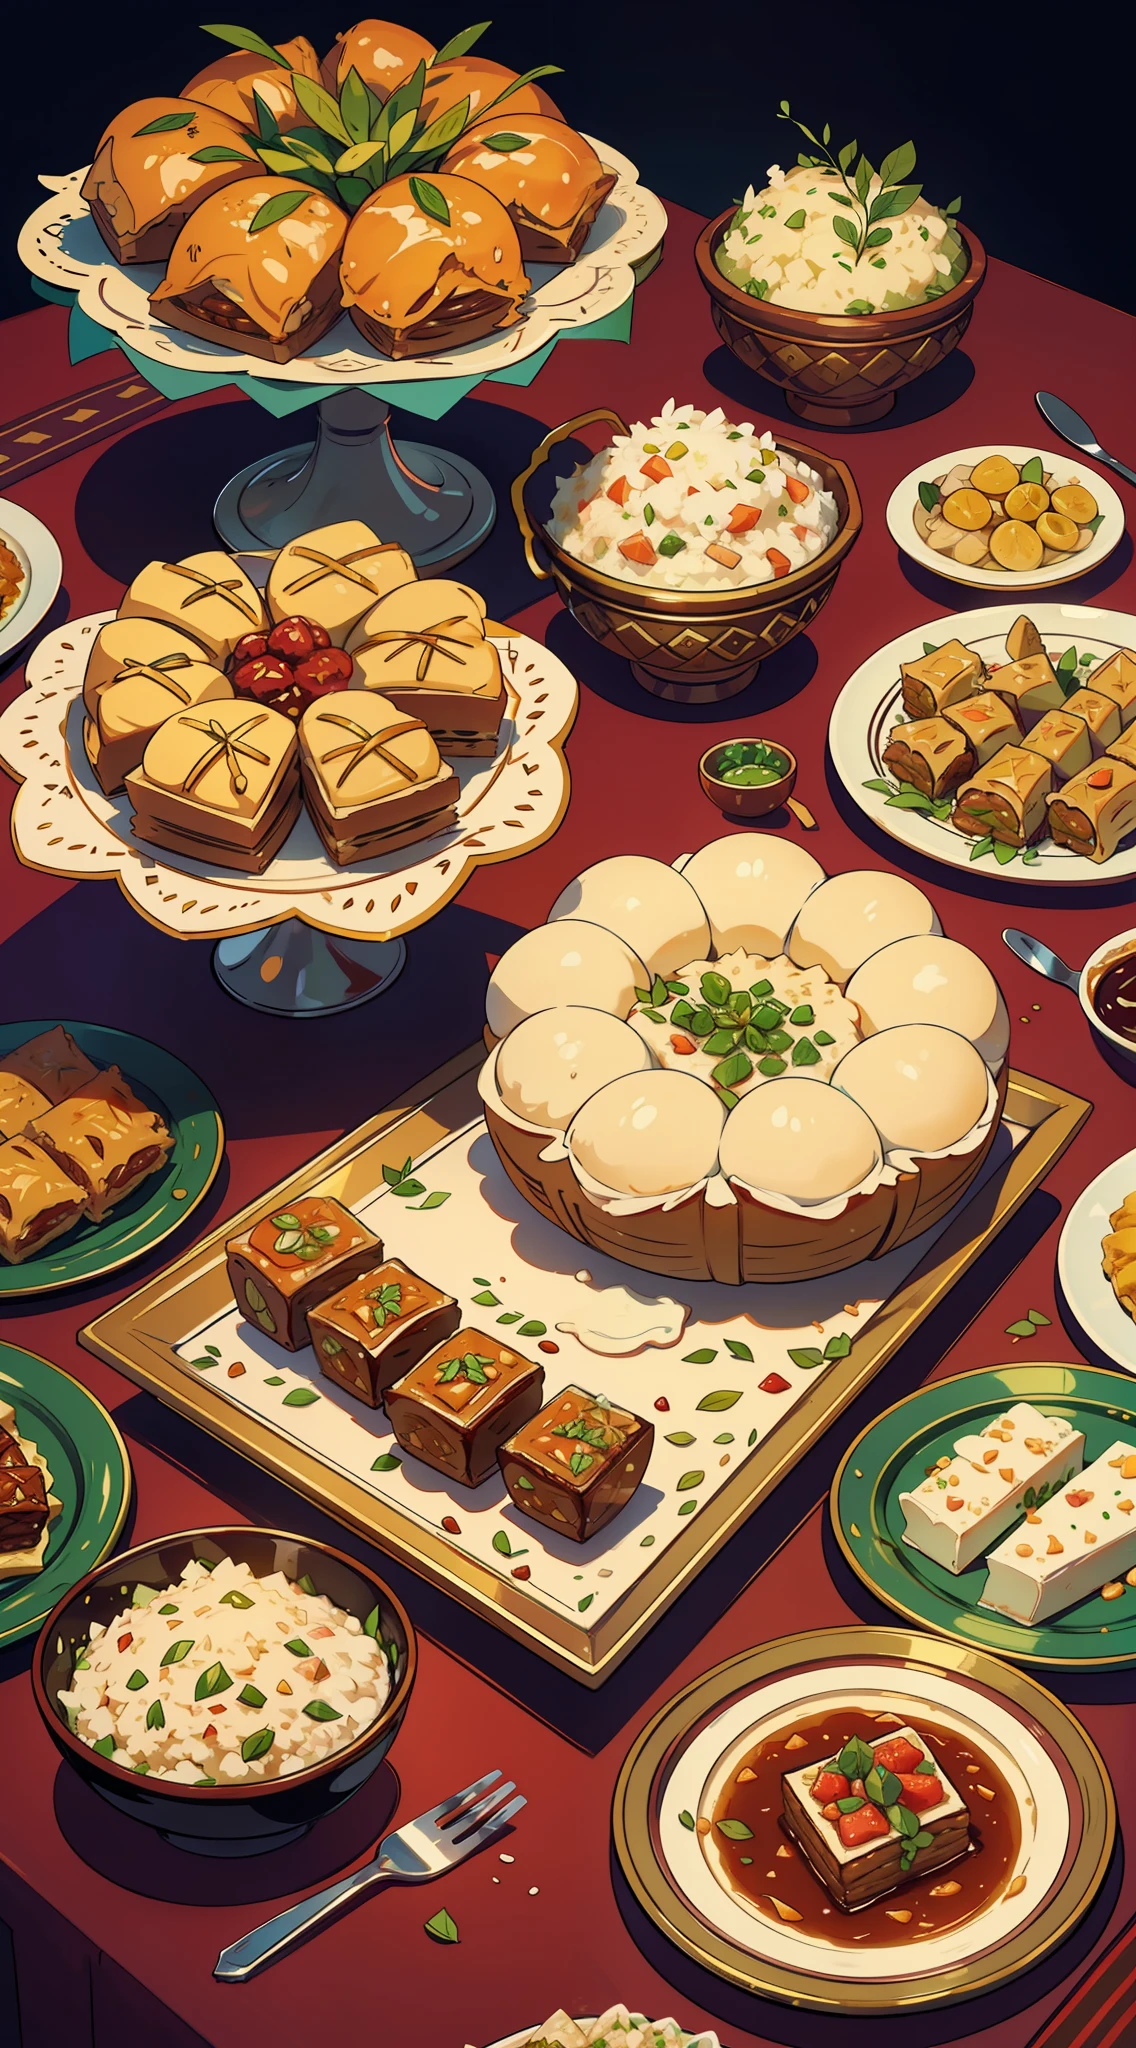 맛있는 Eid 별미가 풍성하게 펼쳐지는 모습을 보여주세요., 육즙이 풍부한 양고기 또는 염소 요리 포함, 향기로운 쌀, 바클라바와 마아물 같은 맛있는 과자도 있어요.